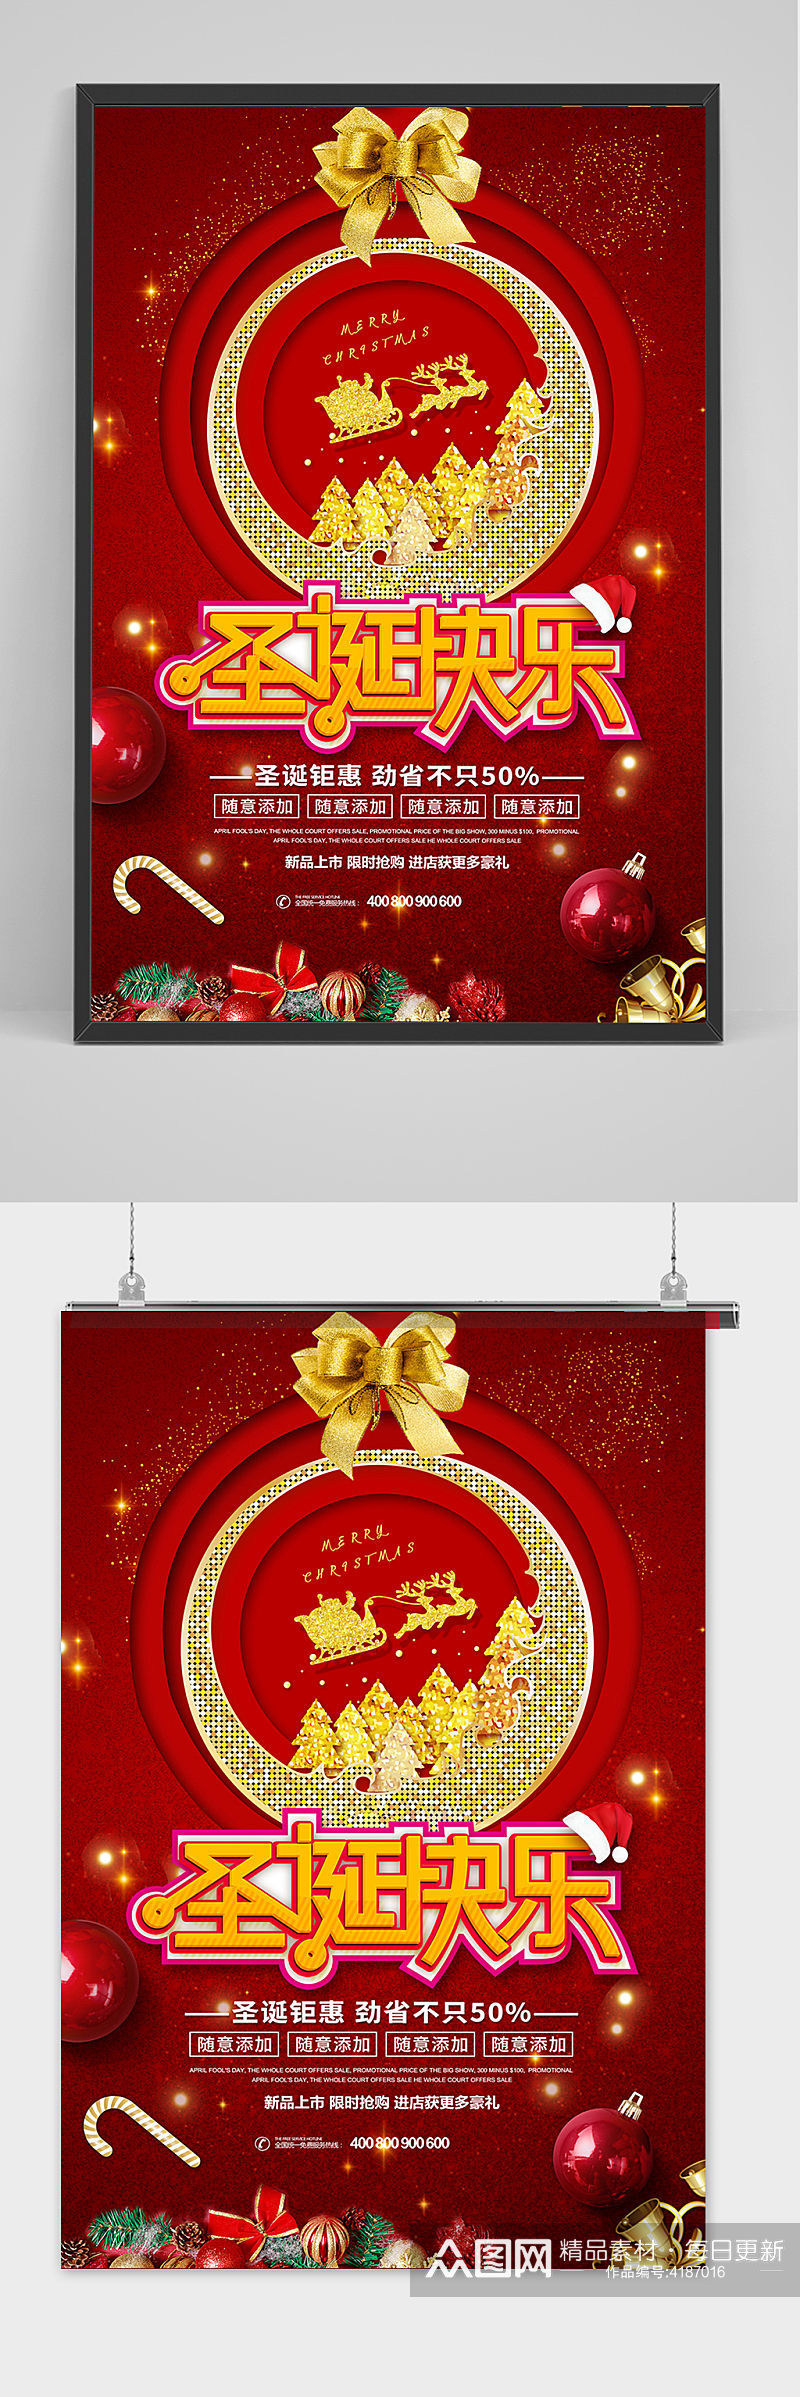 红色喜庆圣诞快乐宣传促销海报素材